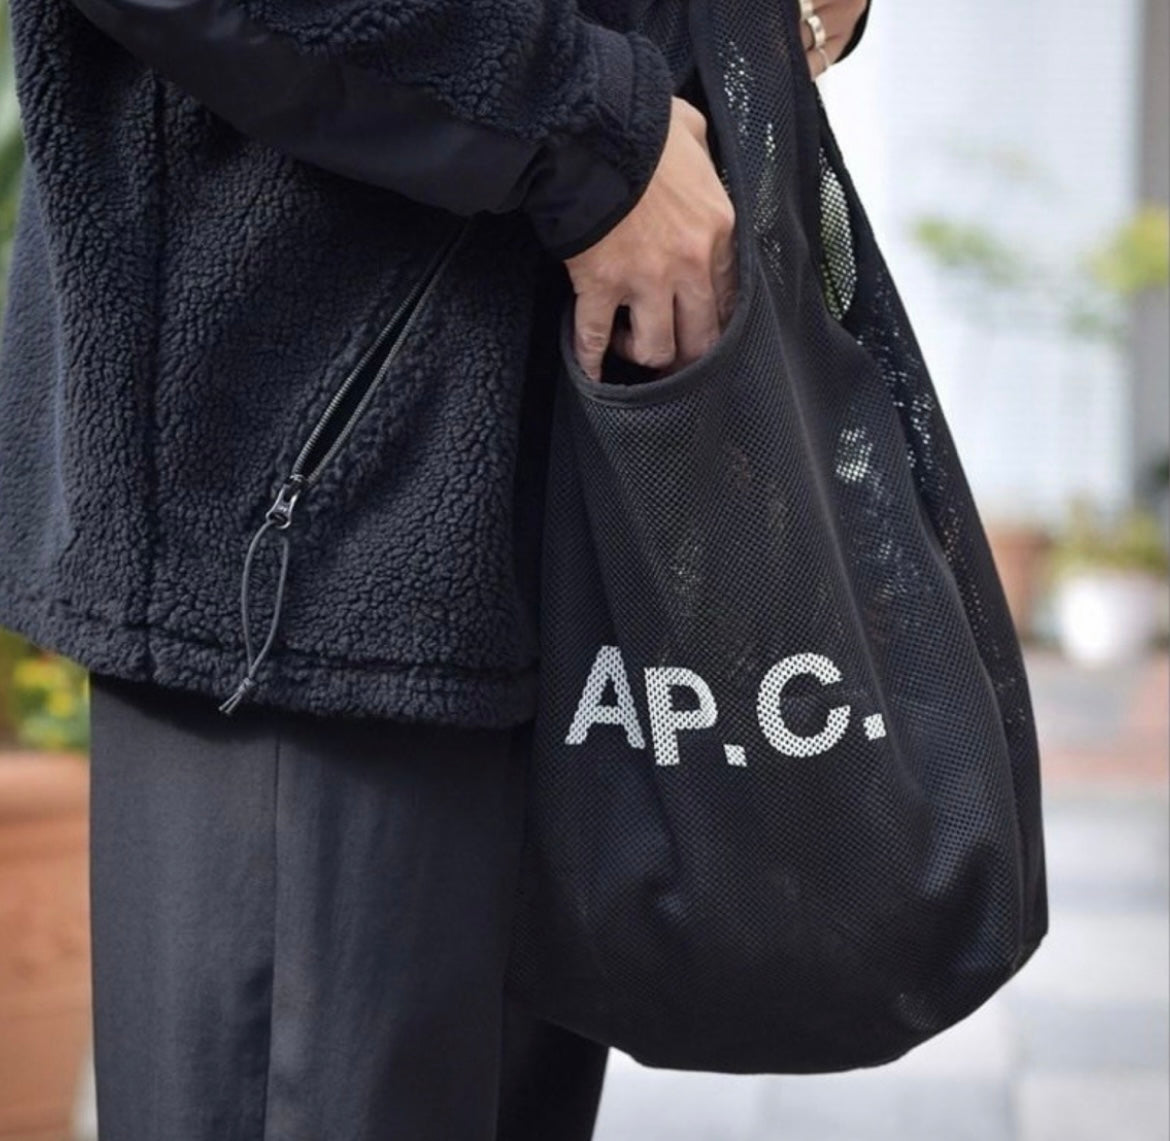 A.P.C. Net Bag